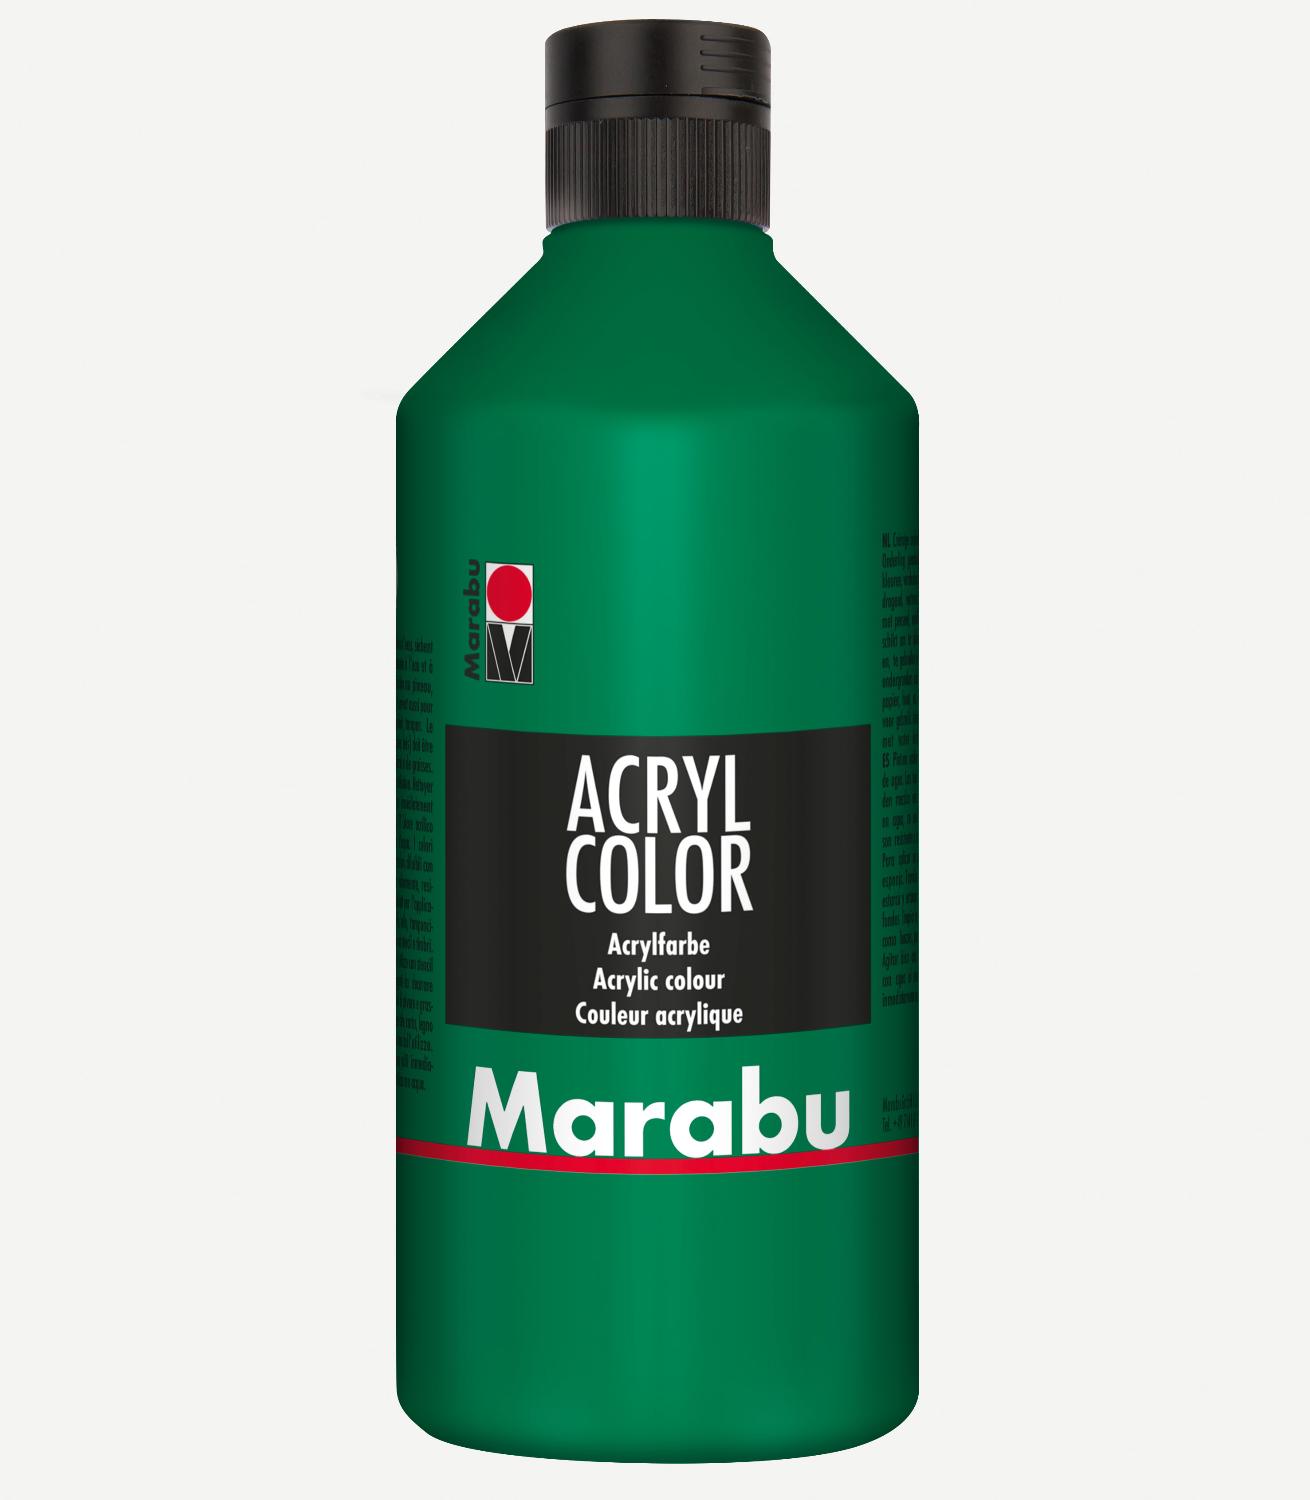 Marabu Acrylfarbe Acryl Color, 500 ml, saftgrn 067